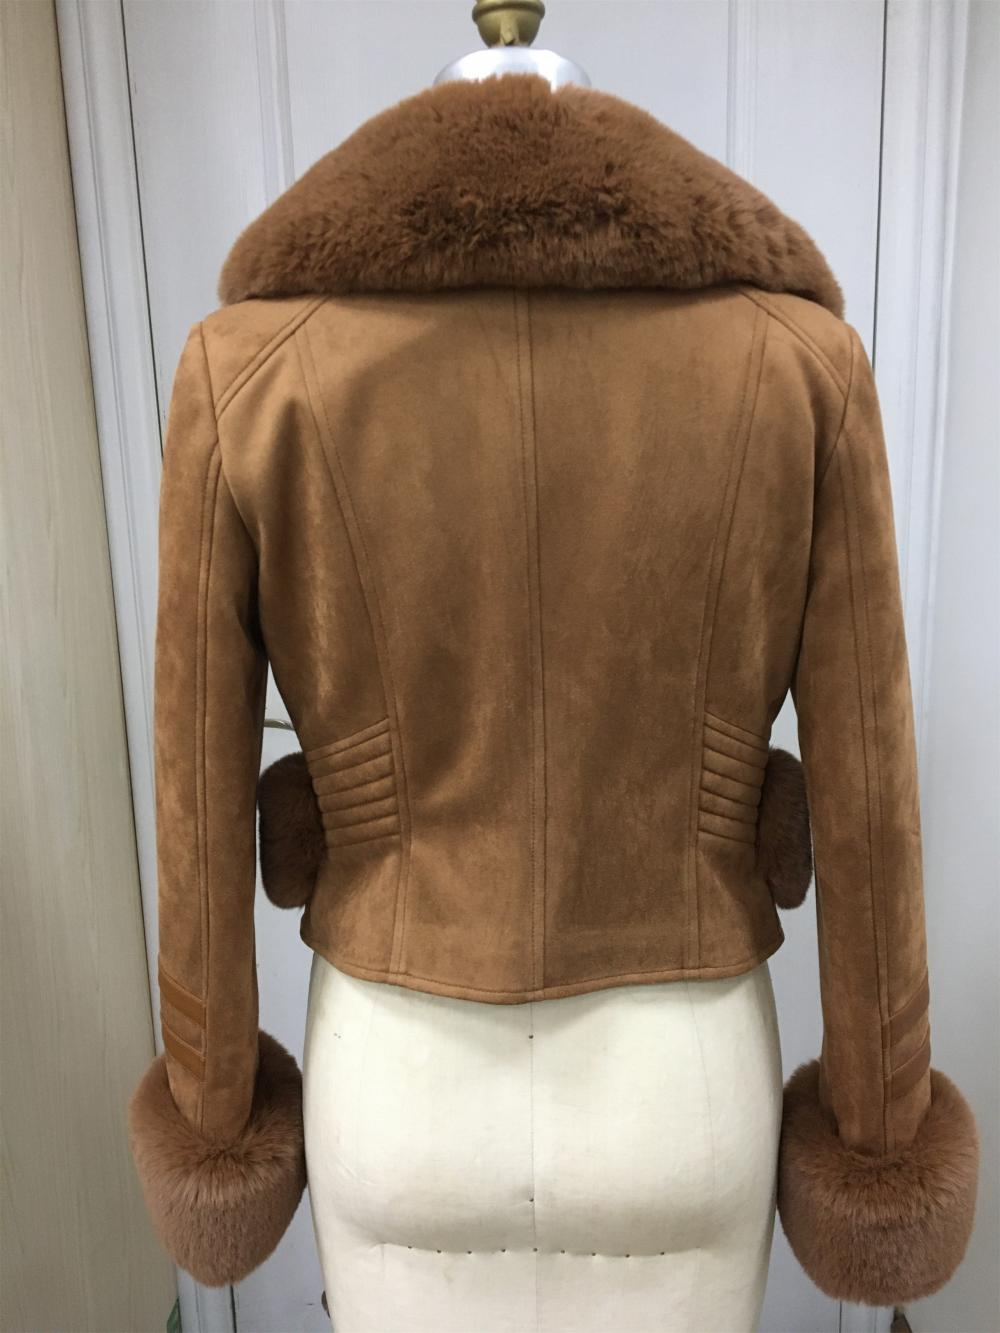 Women's Suede Shearling Winter Jacket